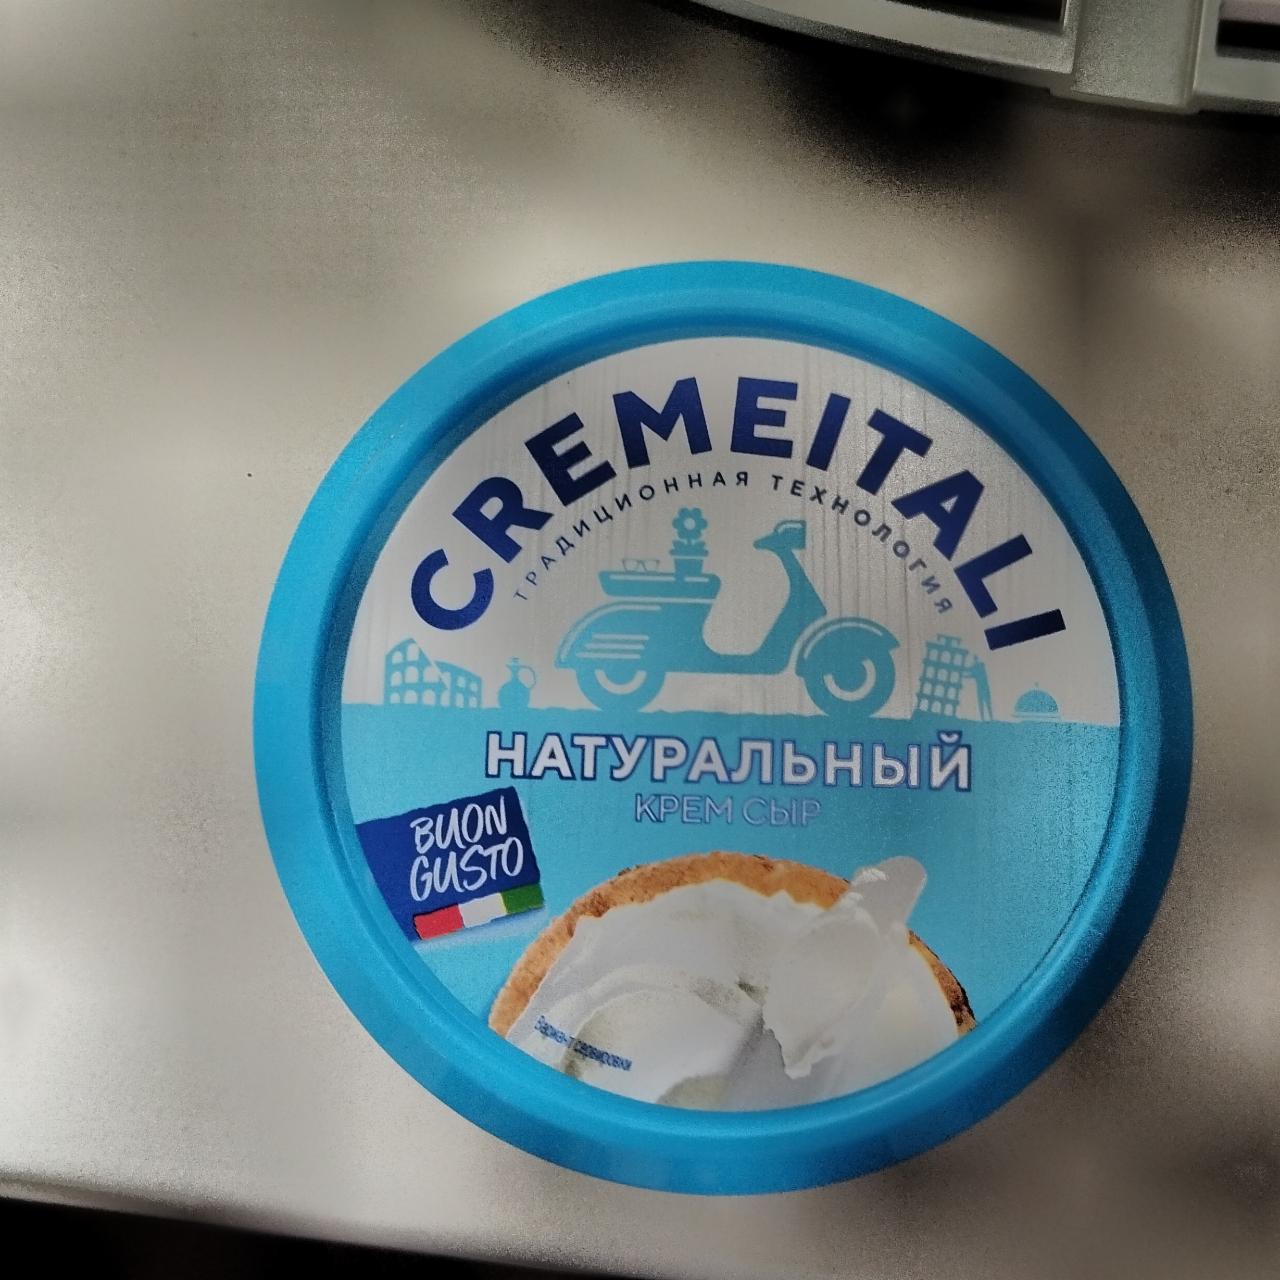 Фото - Натуральный крем сыр Cremeitali